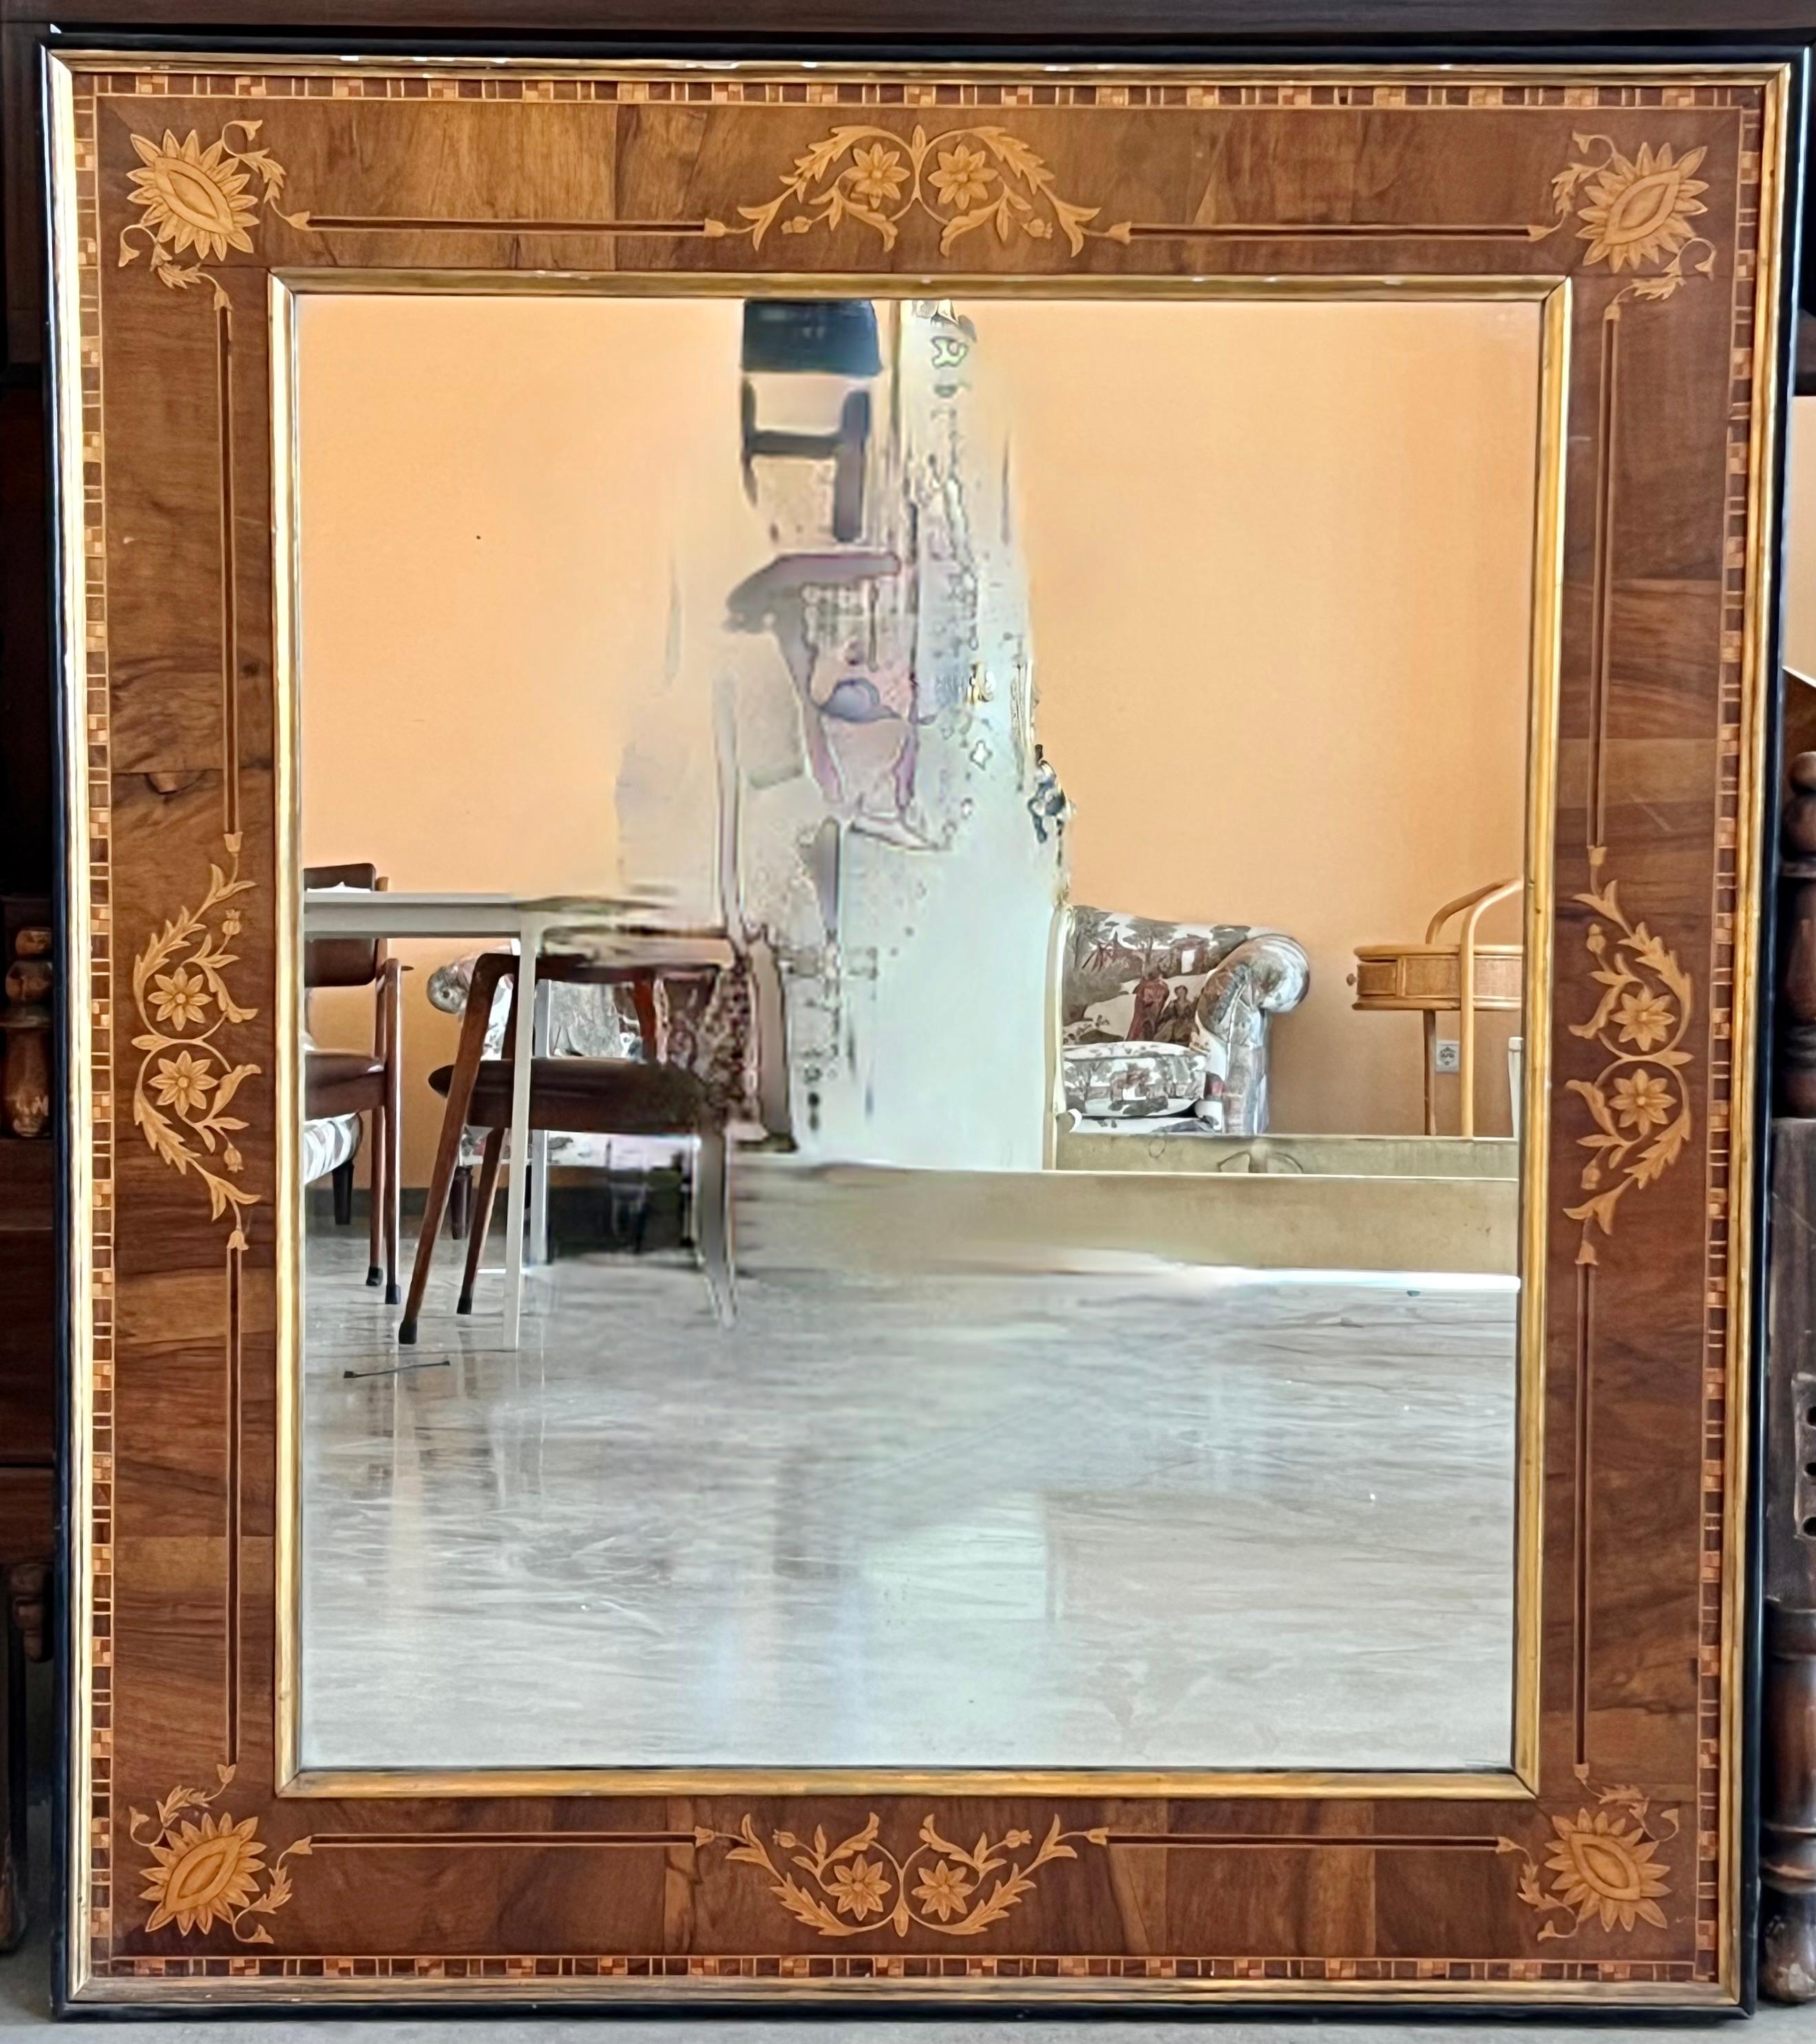 À propos de
Voici un magnifique miroir mural espagnol ancien en acajou flammé et marqueterie, vers 1840.

Le cadre en acajou est magnifiquement incrusté d'une bordure continue en marqueterie.

La qualité et l'exécution de cette pièce étonnante sont